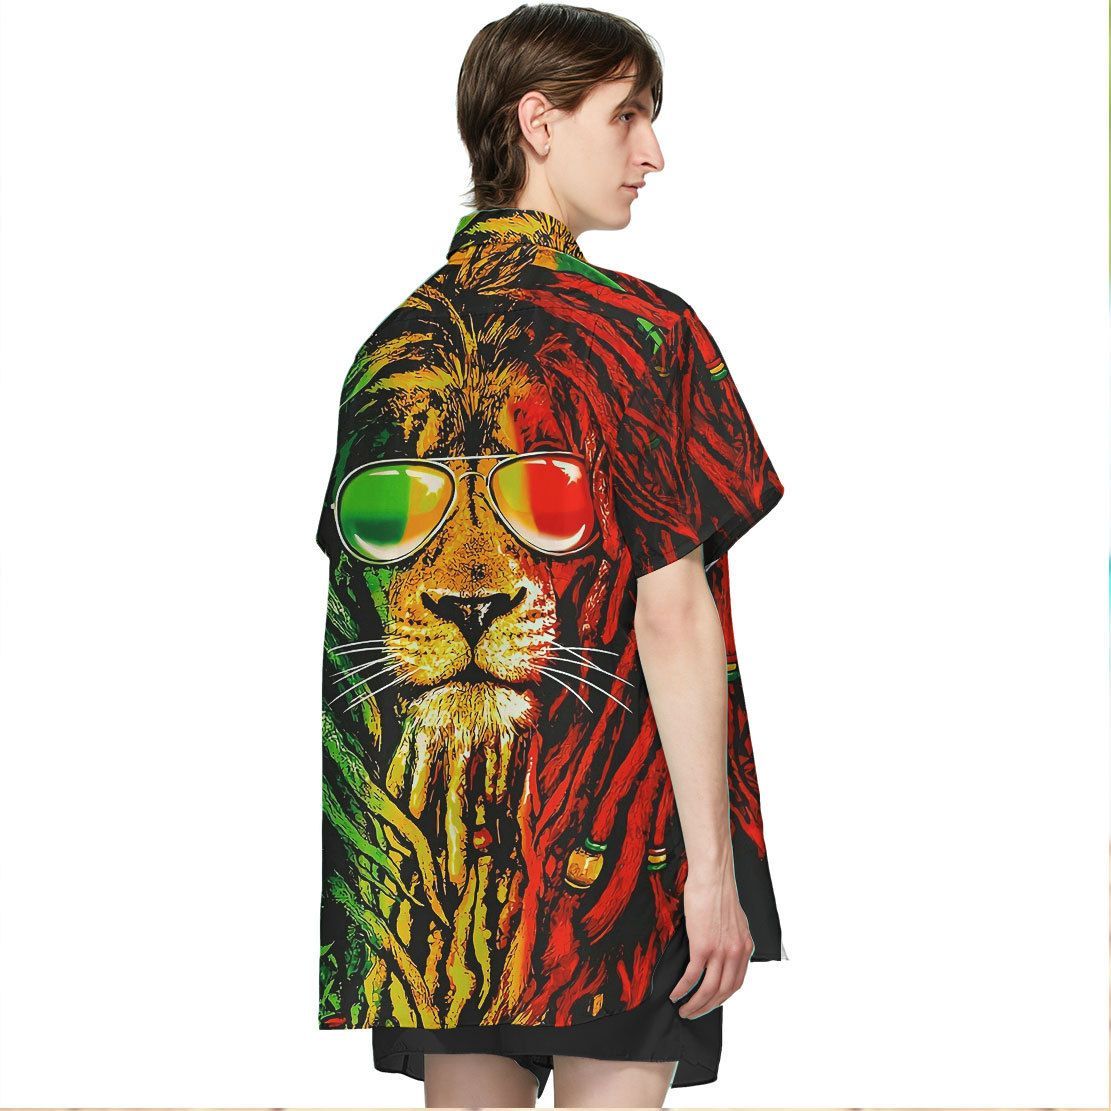 Gearhuman 3D Reggae Lion Hawaii Shirt ZK1606215 Short Sleeve Shirt 